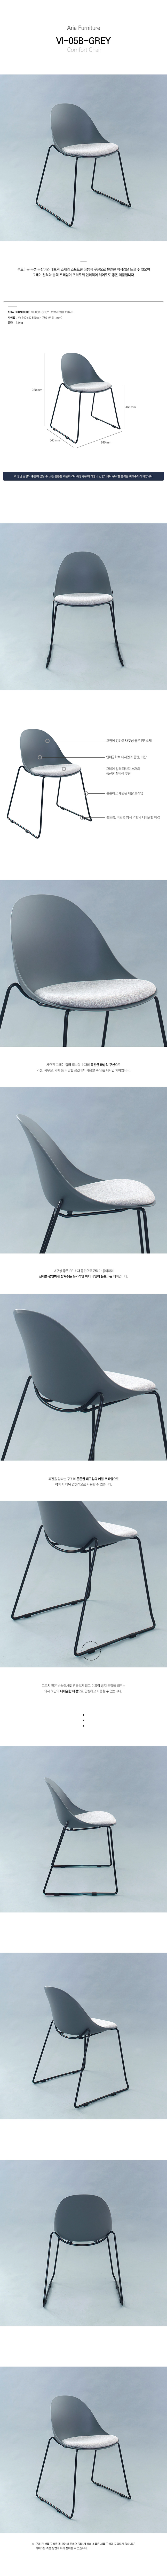 VI-05B-Grey-Chair_200221.jpg